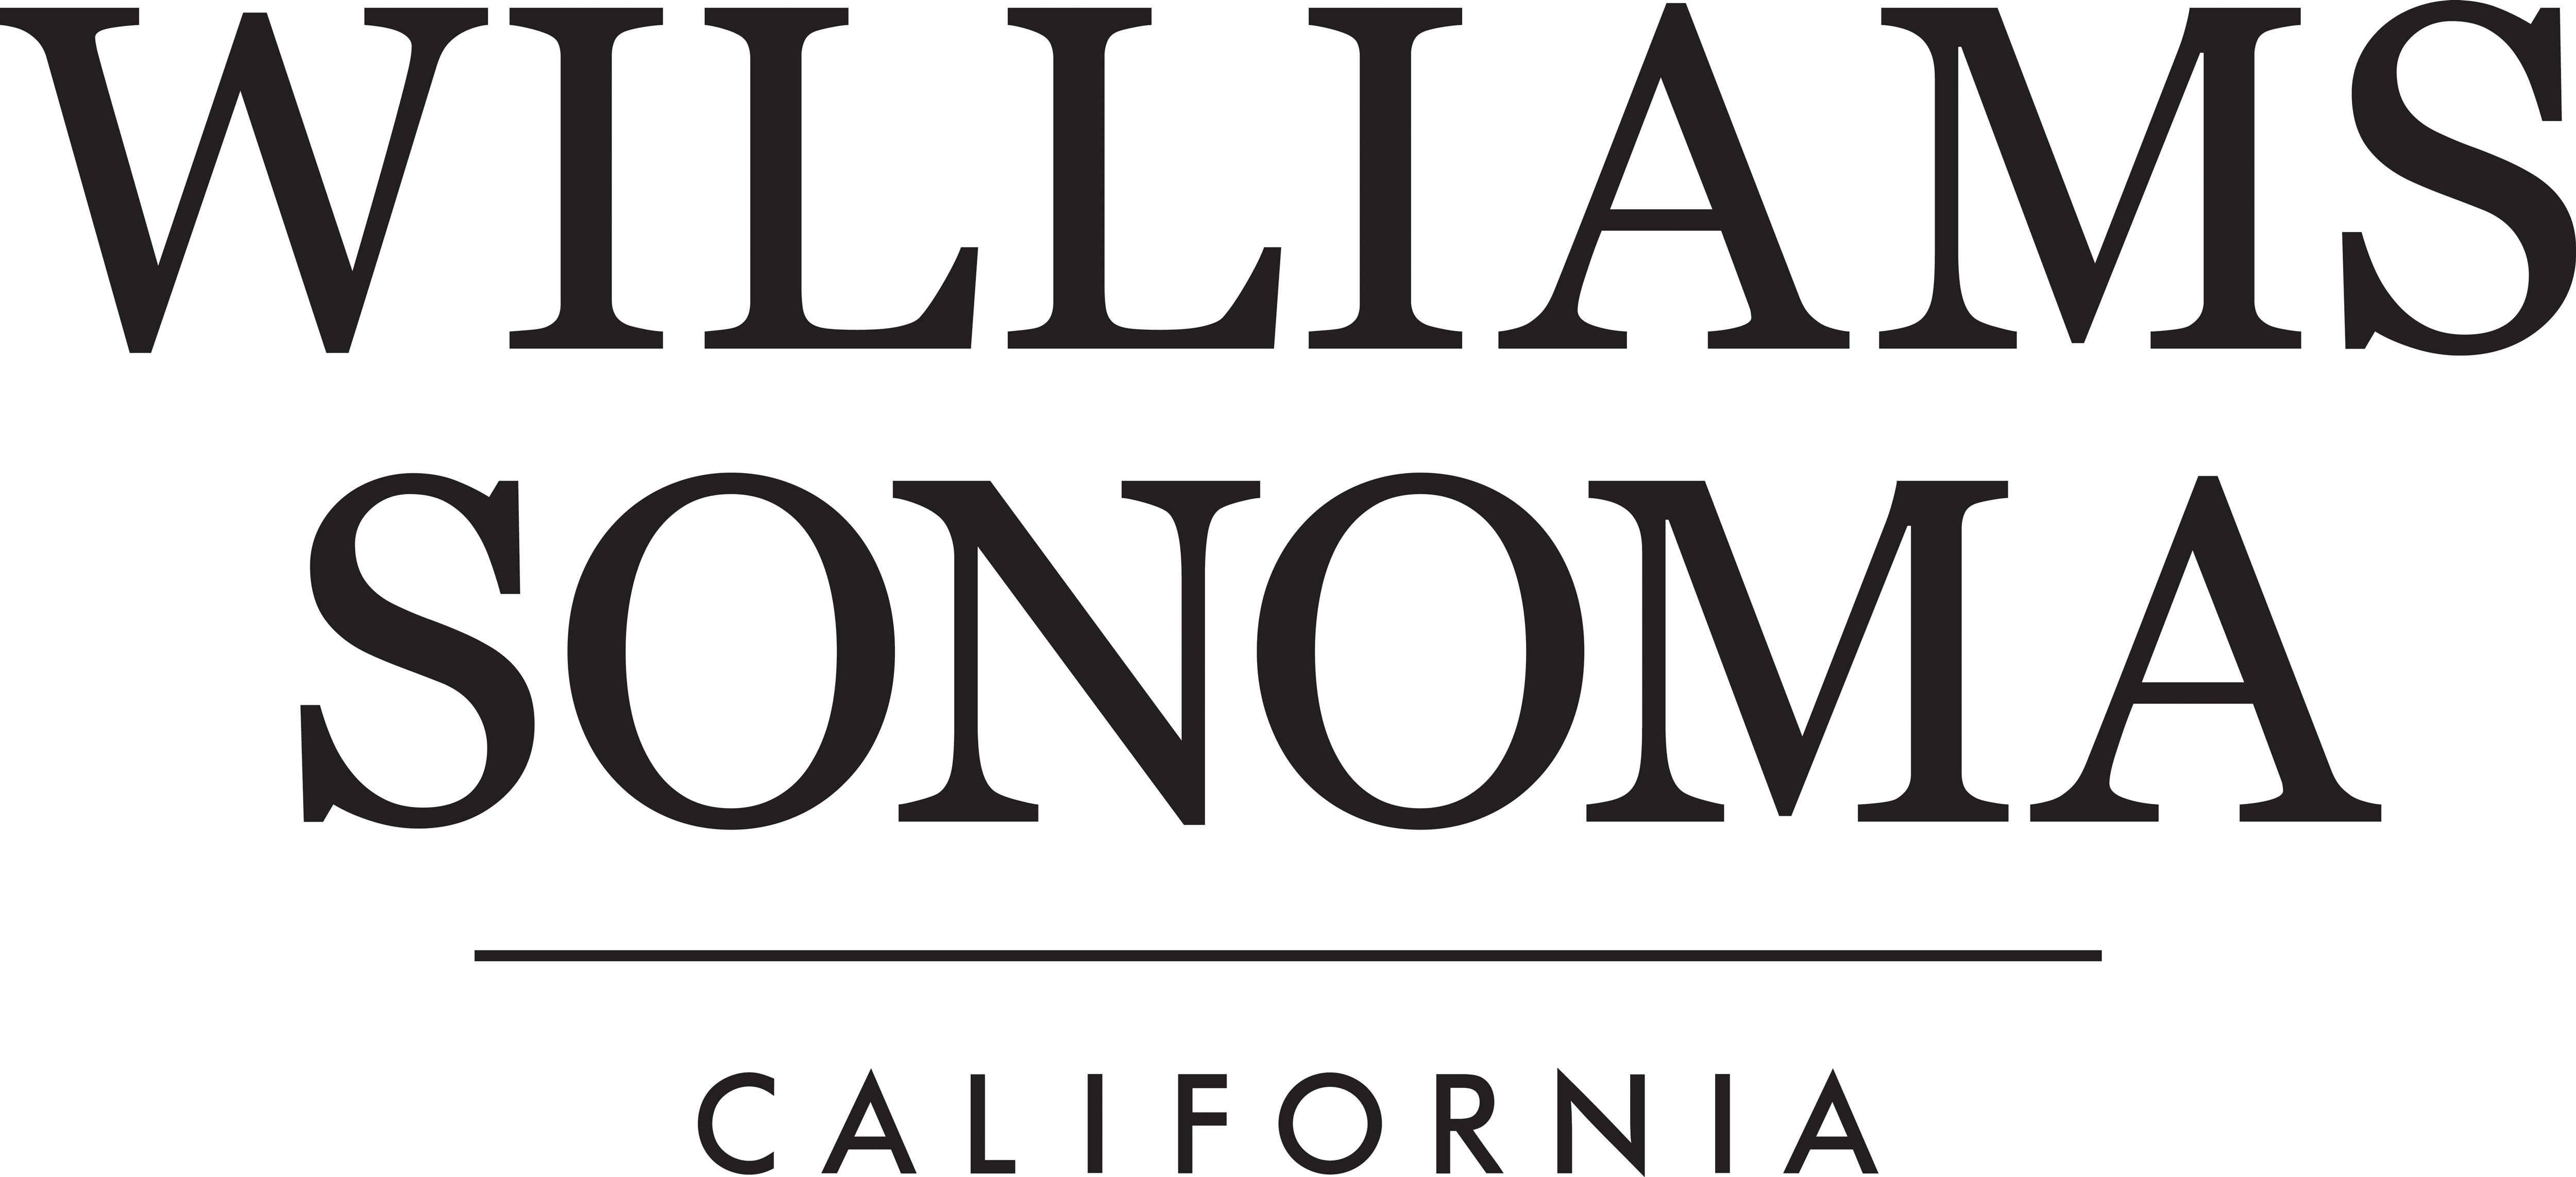 https://mms.businesswire.com/media/20230918559851/en/811716/5/WS_California_Logo_Black_CMYK_2.jpg